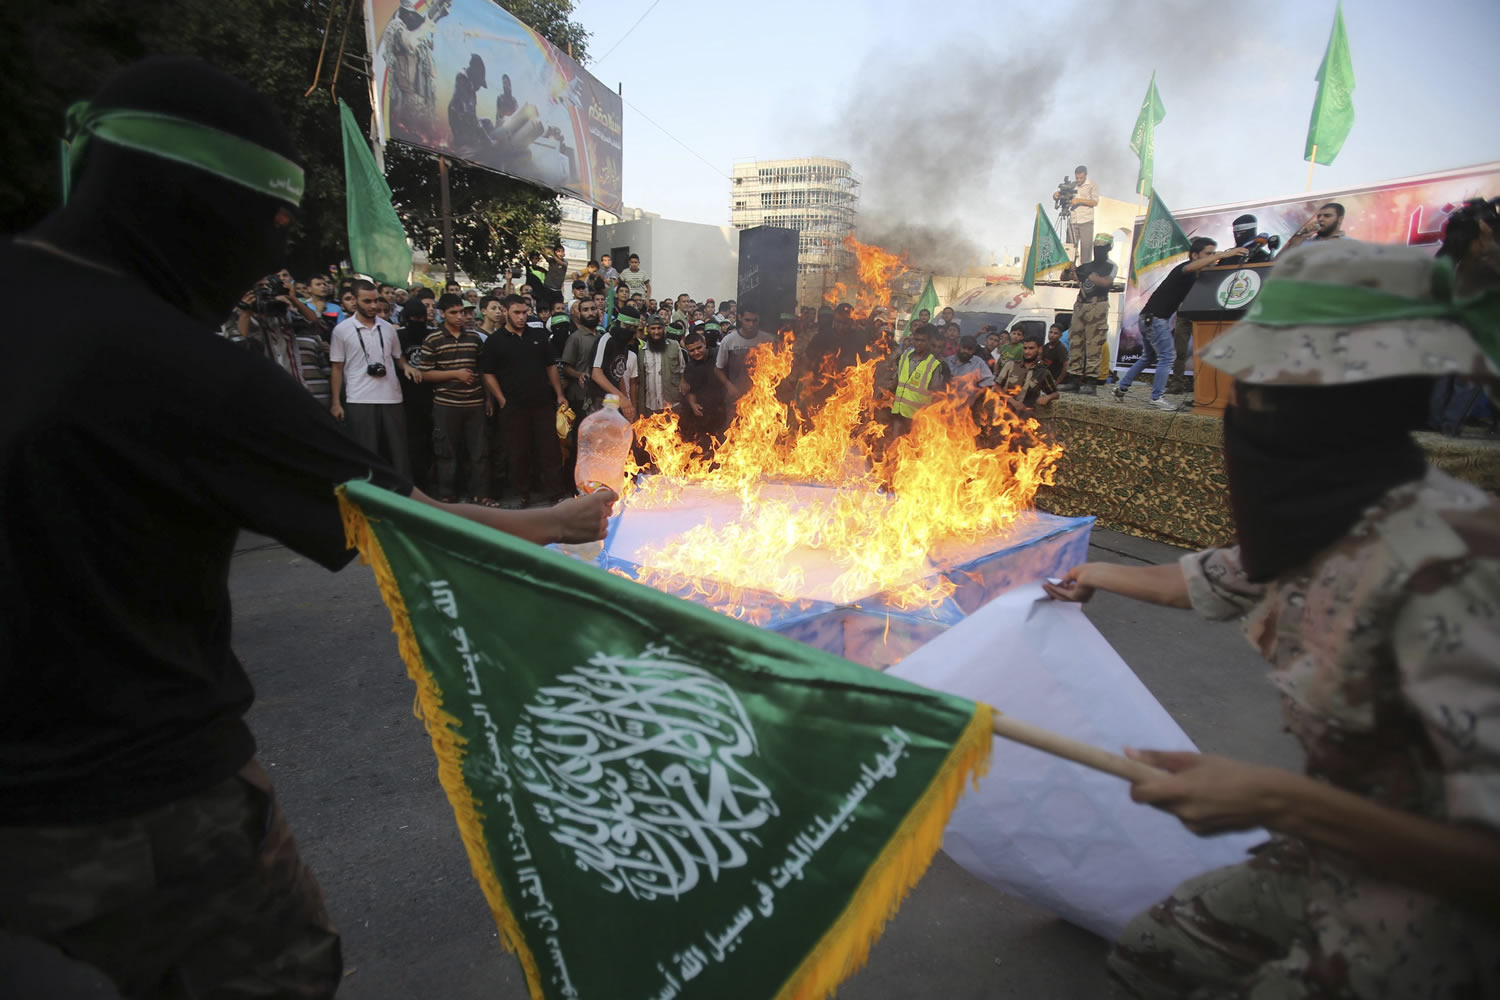 Los negociadores apuran las últimas horas de la tregua mientras Hamás e Israel se amenazan de nuevo